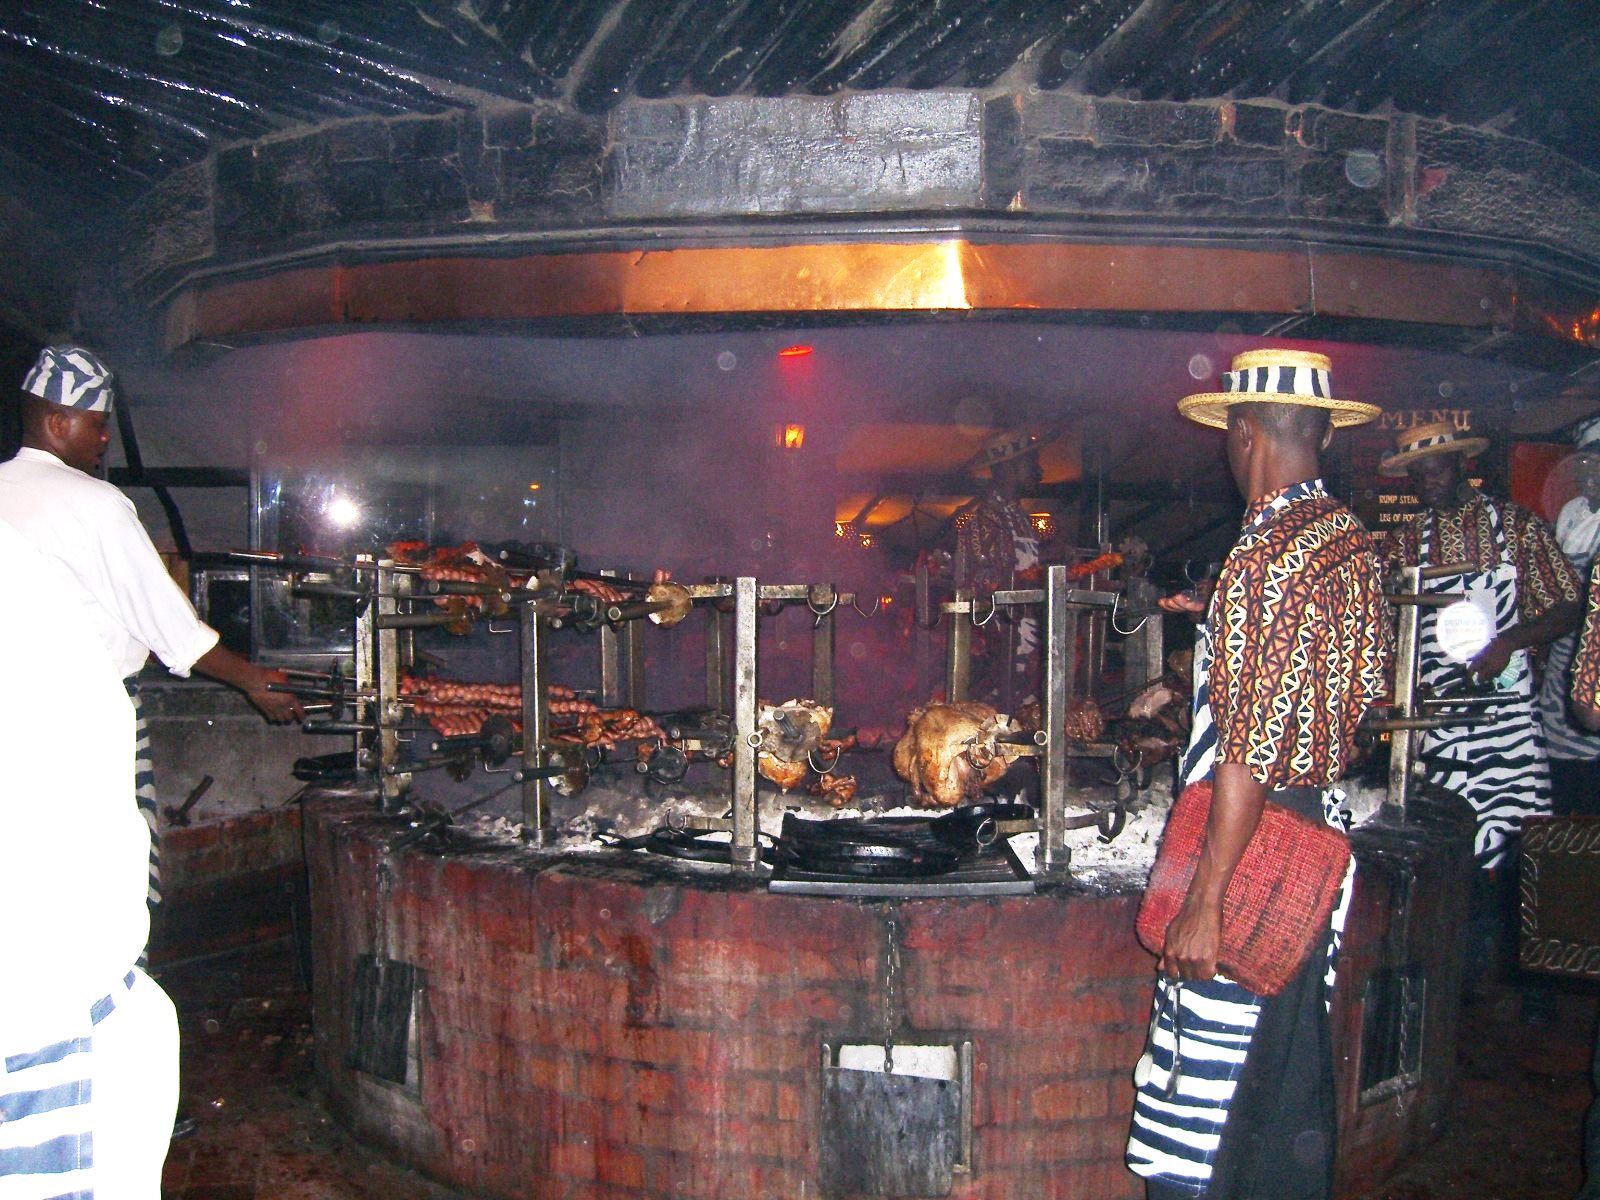 Meat_roasting_at_Carnivore_restaurant_in_Nairobi